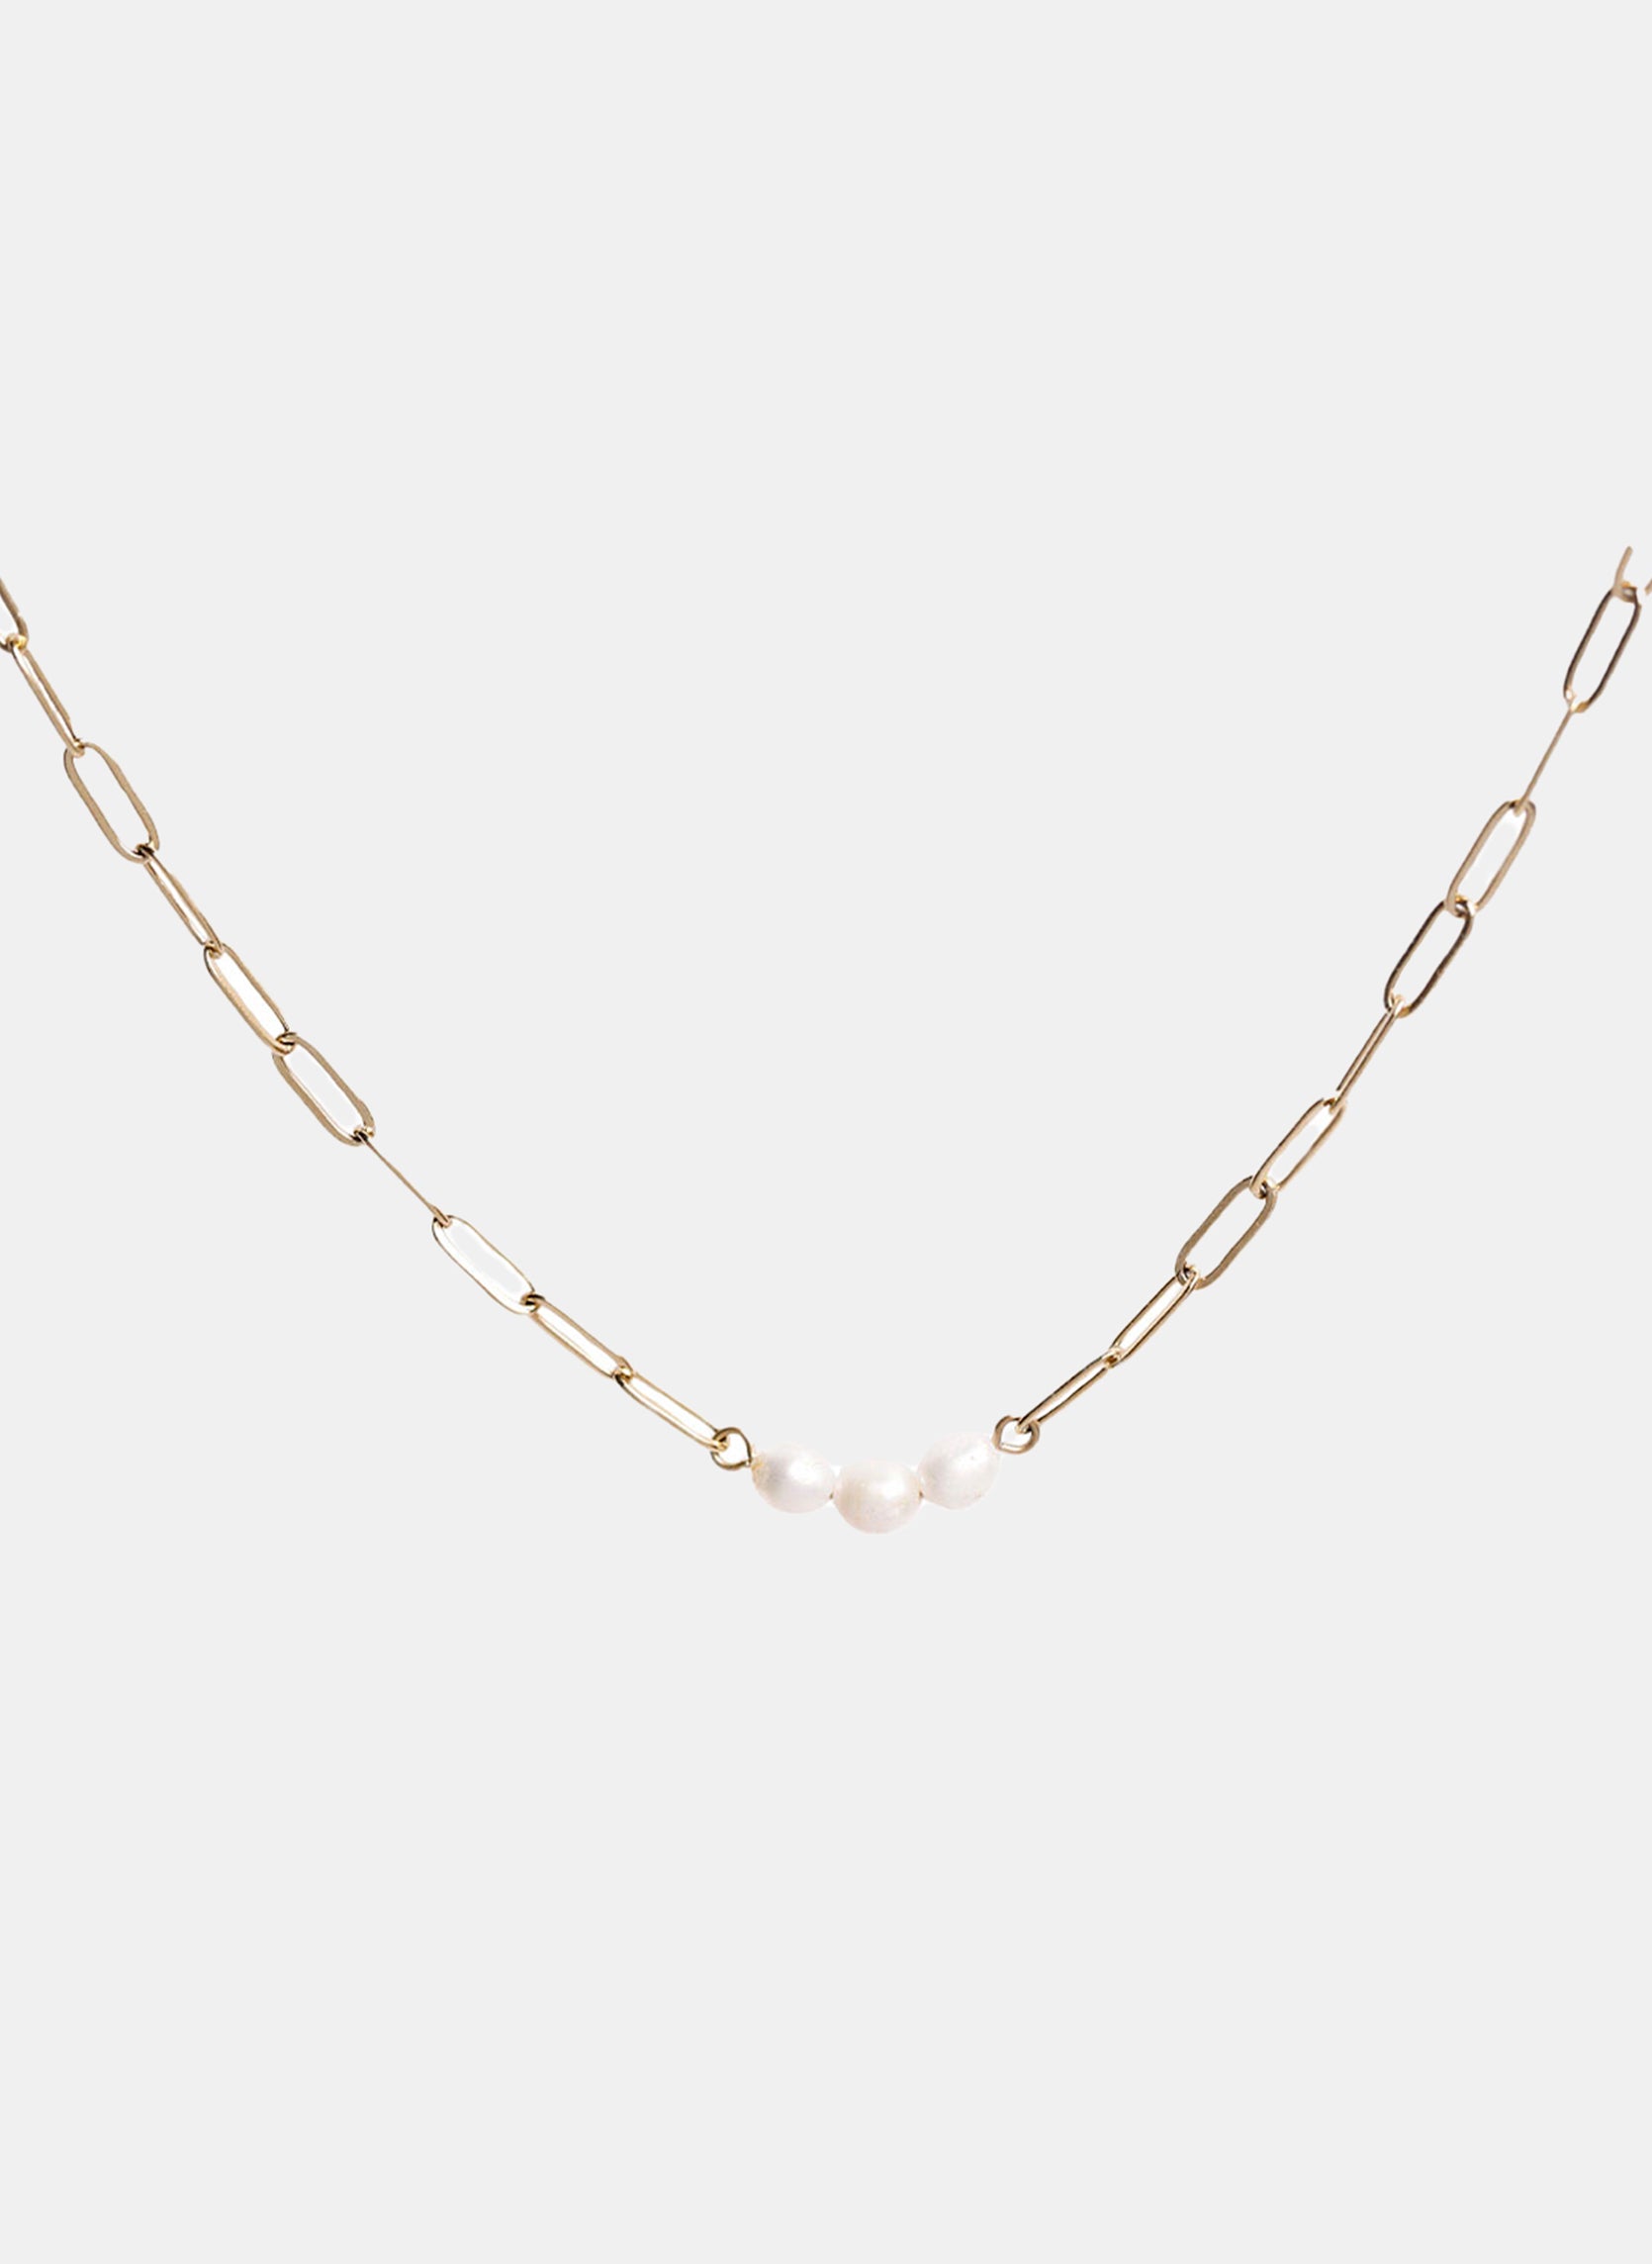 Chain necklace Lorem